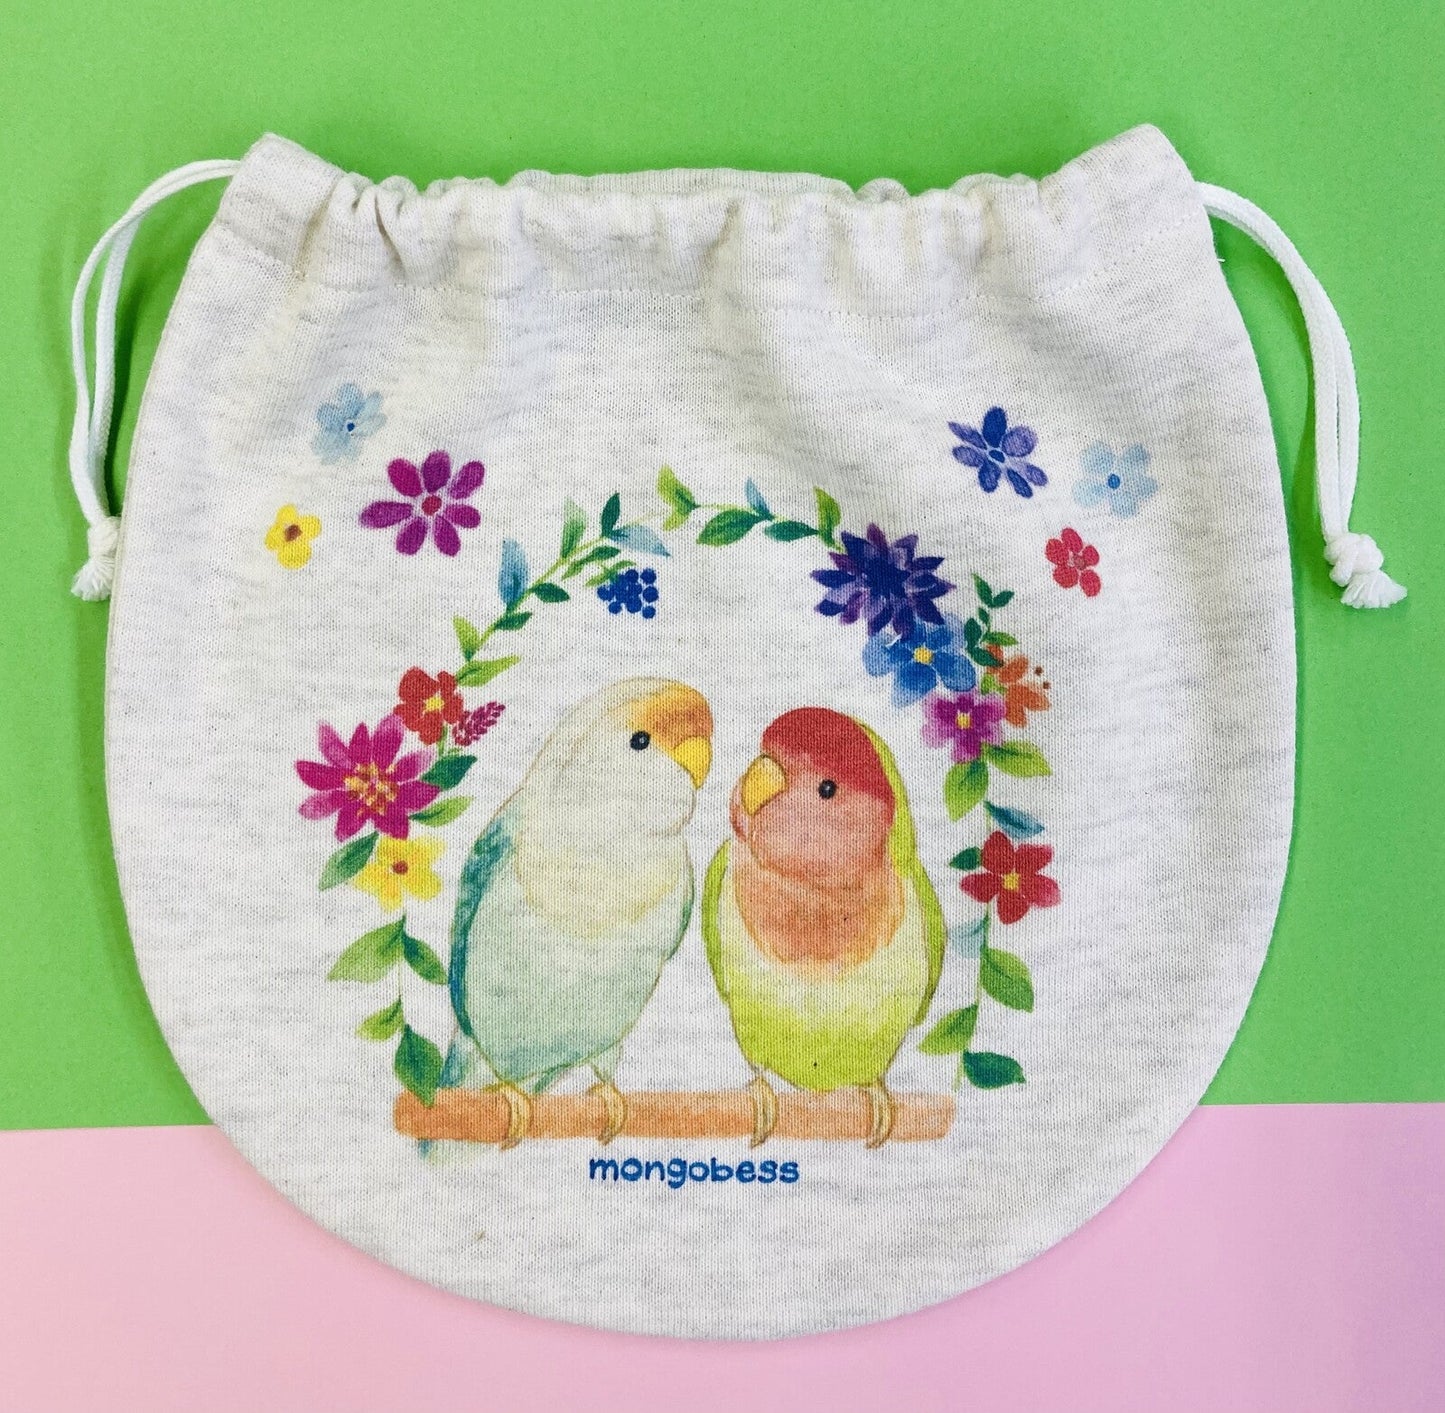 Lovebird Drawstring Bag Medium Size